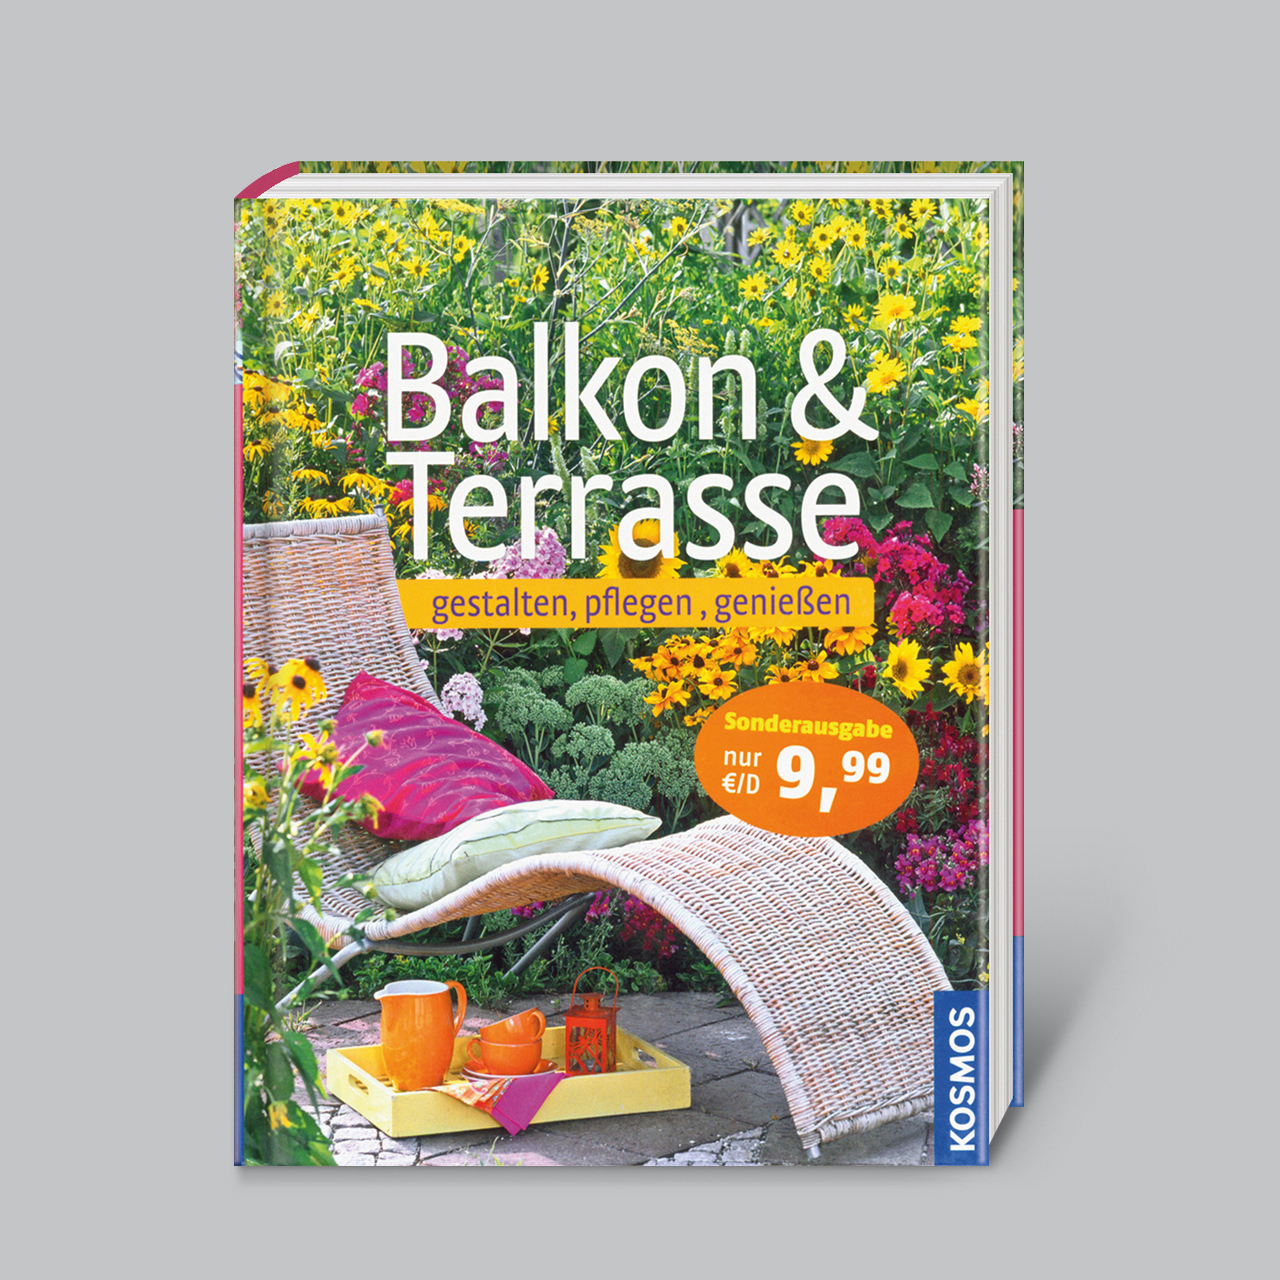 Terrasse Garten Gestalten Elegant Balkon & Terrasse Gestalten Pflegen Genießen